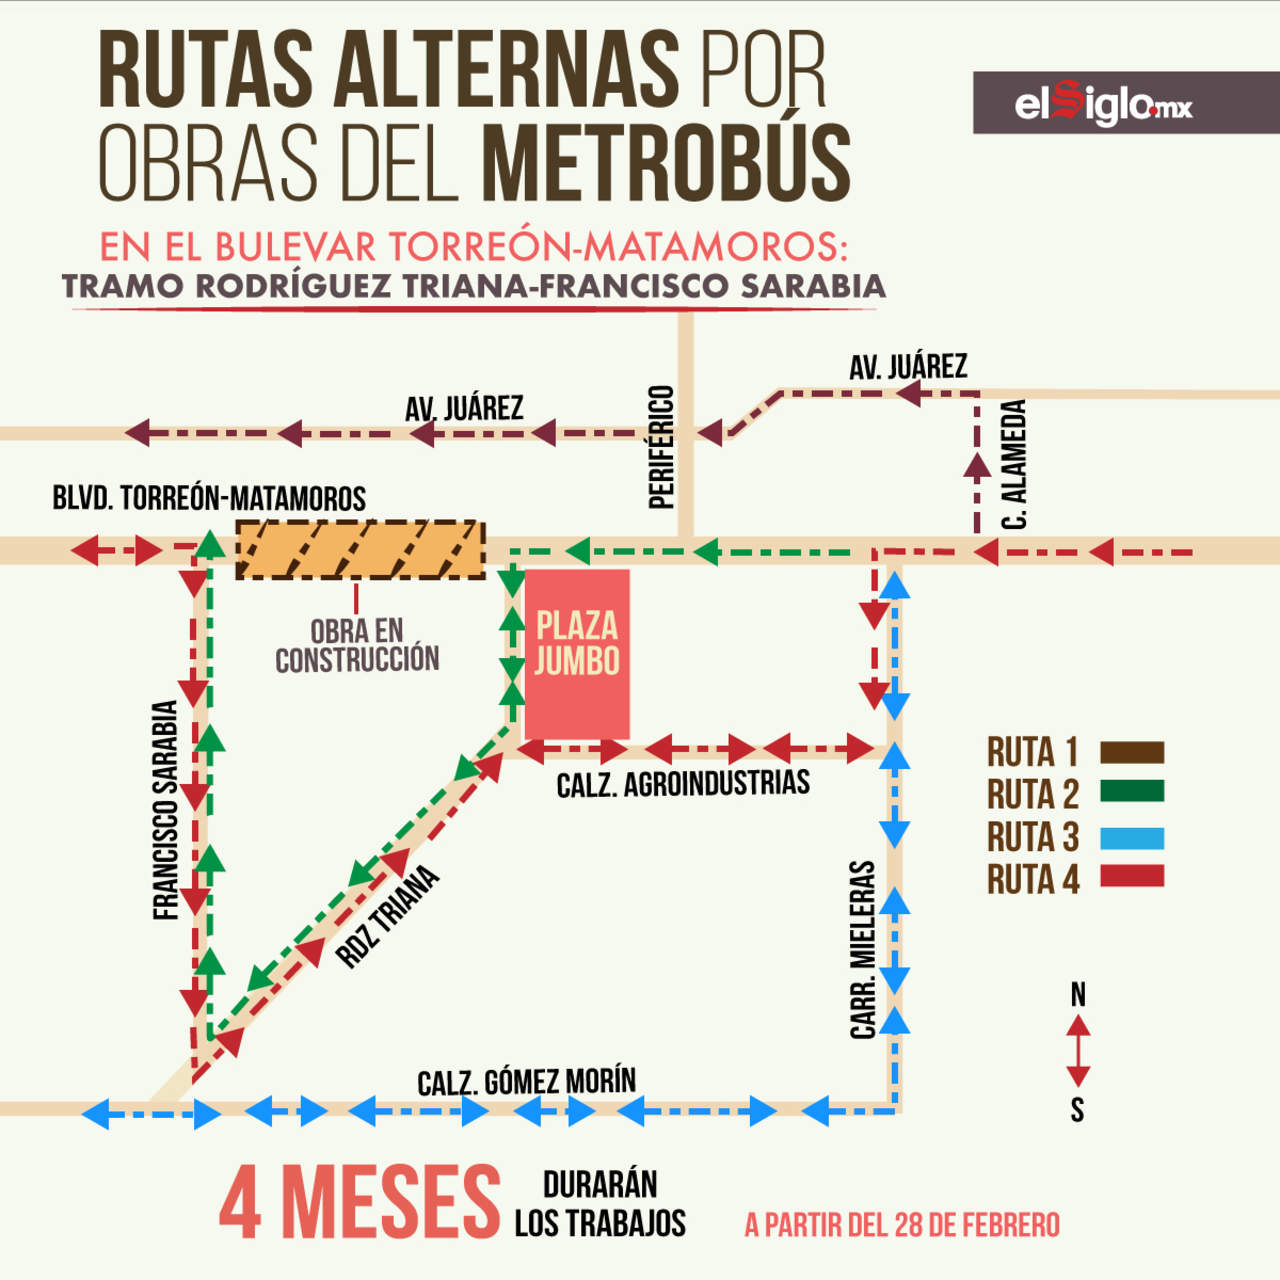 Alternas. Hoy lunes comienzan las maniobras de preparación para las rutas alternas que apoyarán durante 4 meses el sector de Torreón-Matamoros a la altura de Sarabia-Rdz. Triana. (TOM PALOMARES)